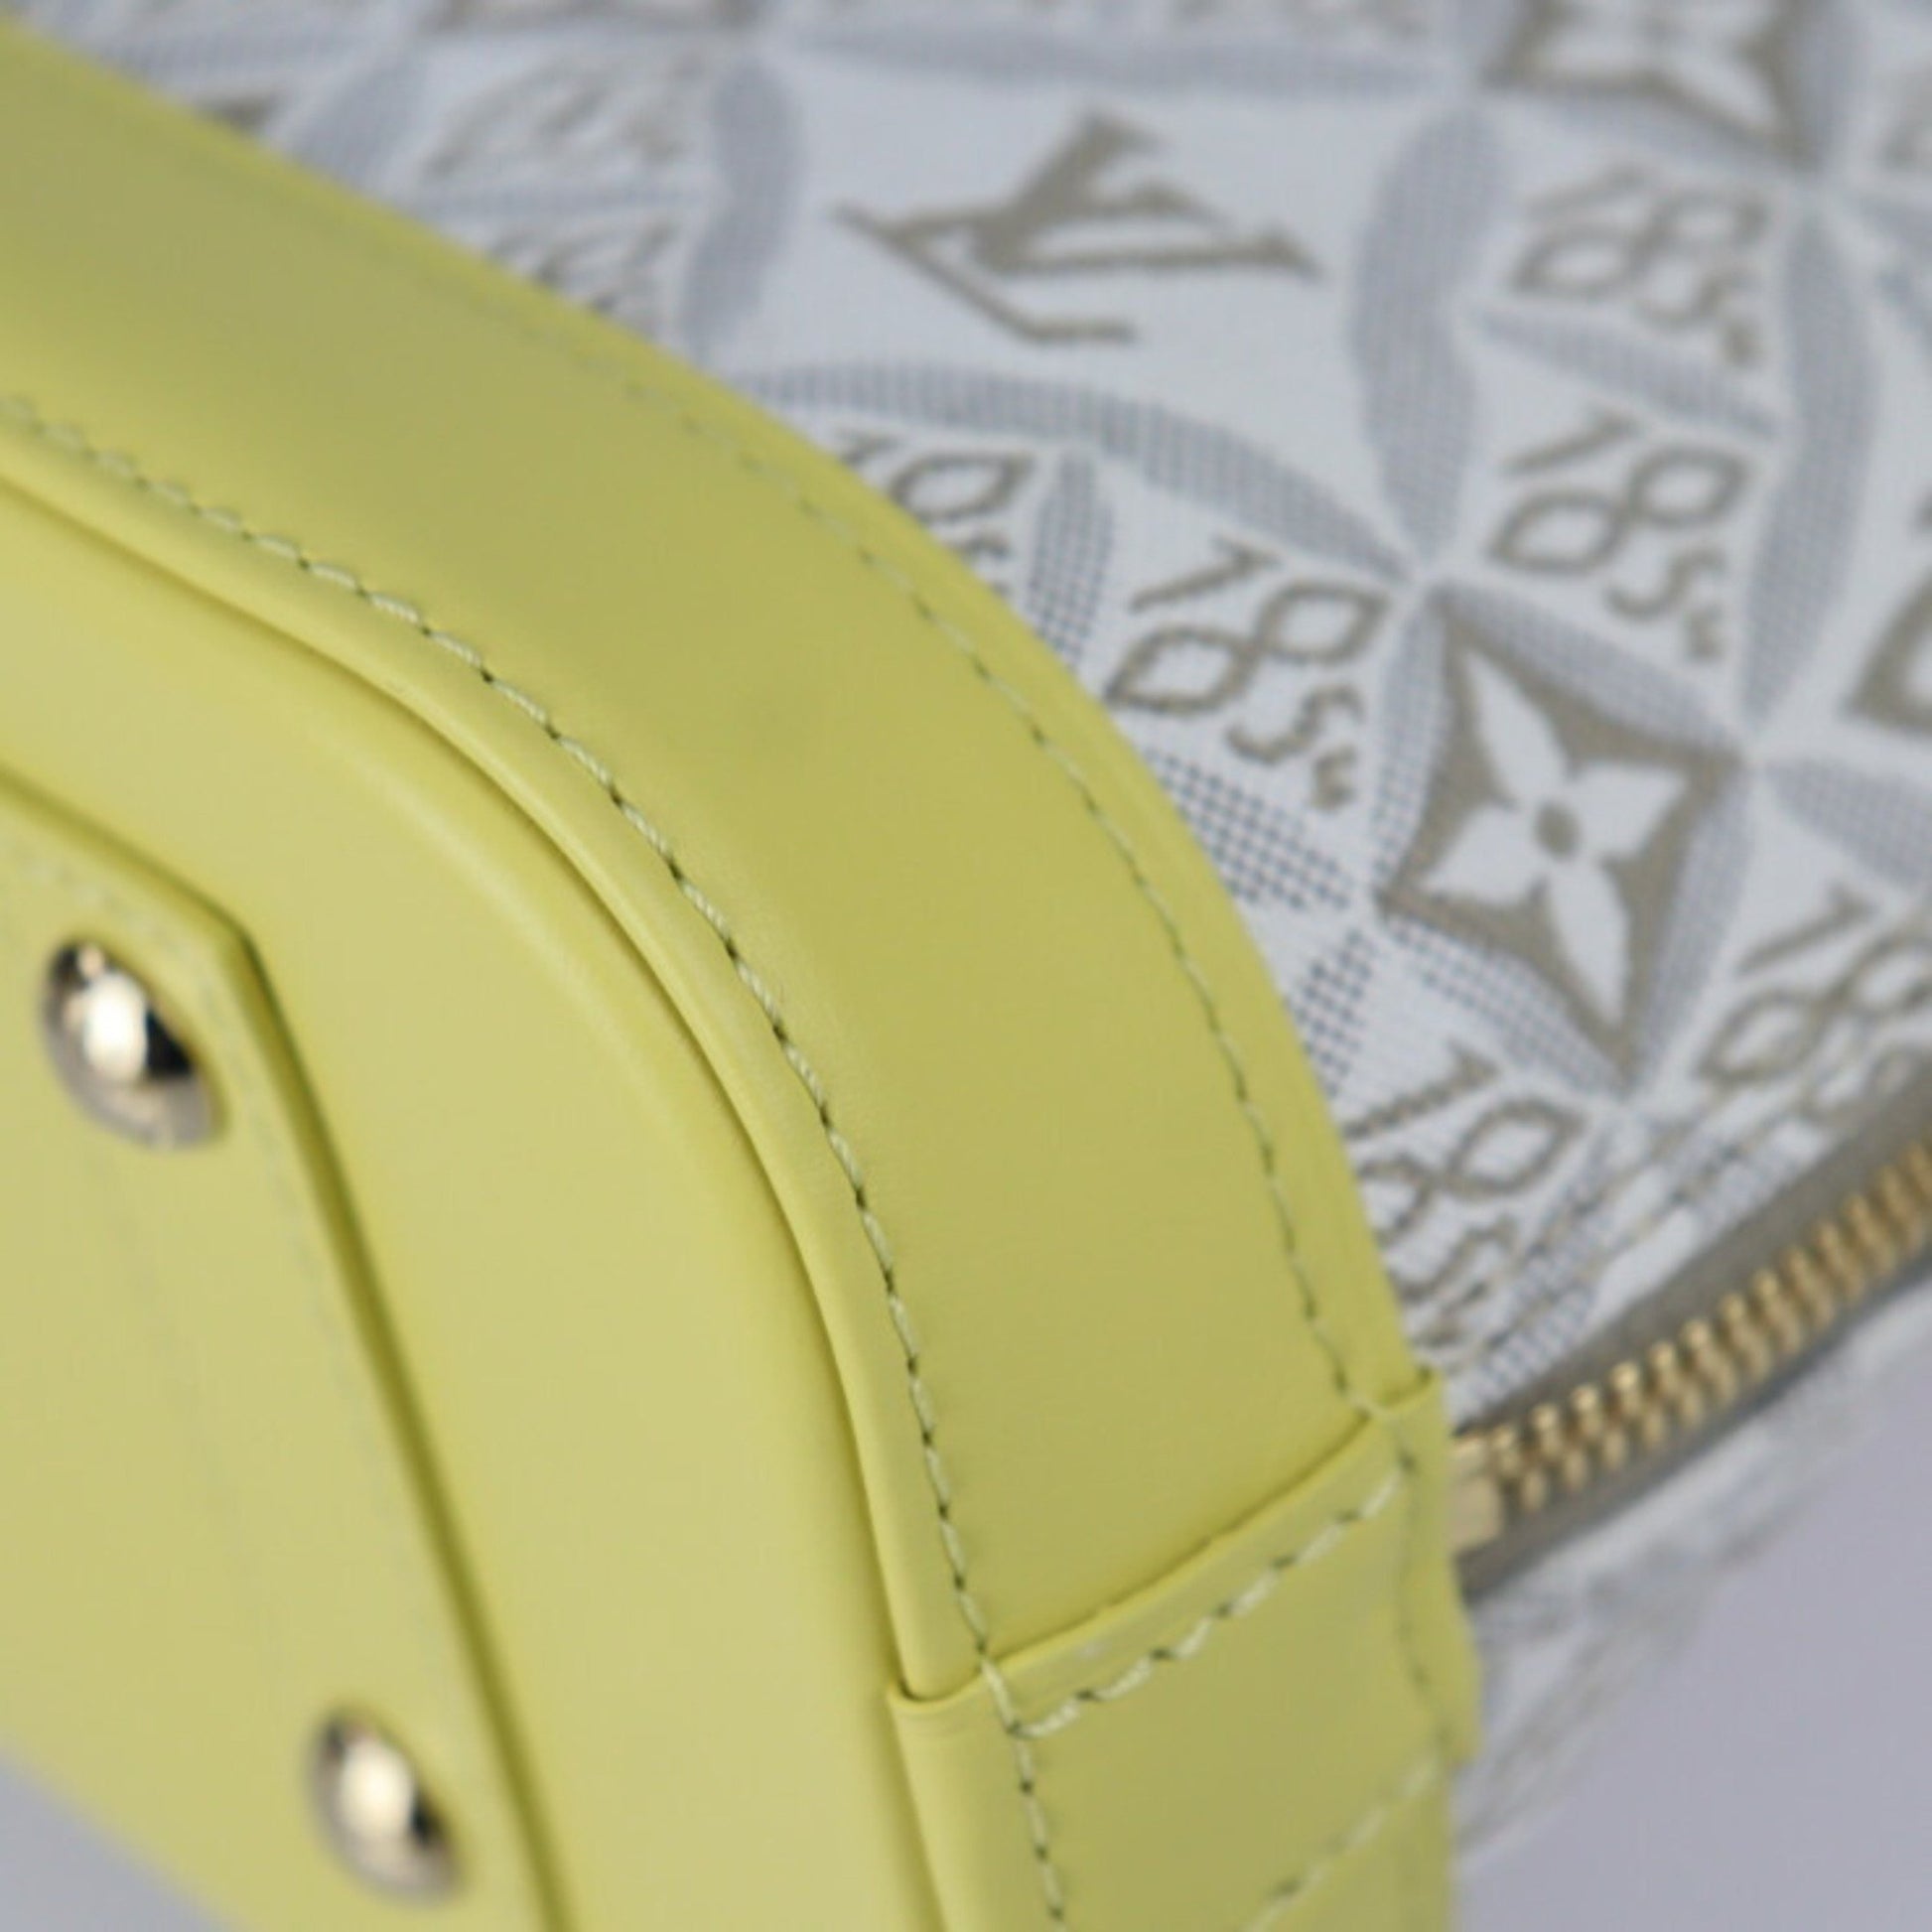 Louis Vuitton Alma BB Since 1854 Jacquard Ecru White/Yellow in